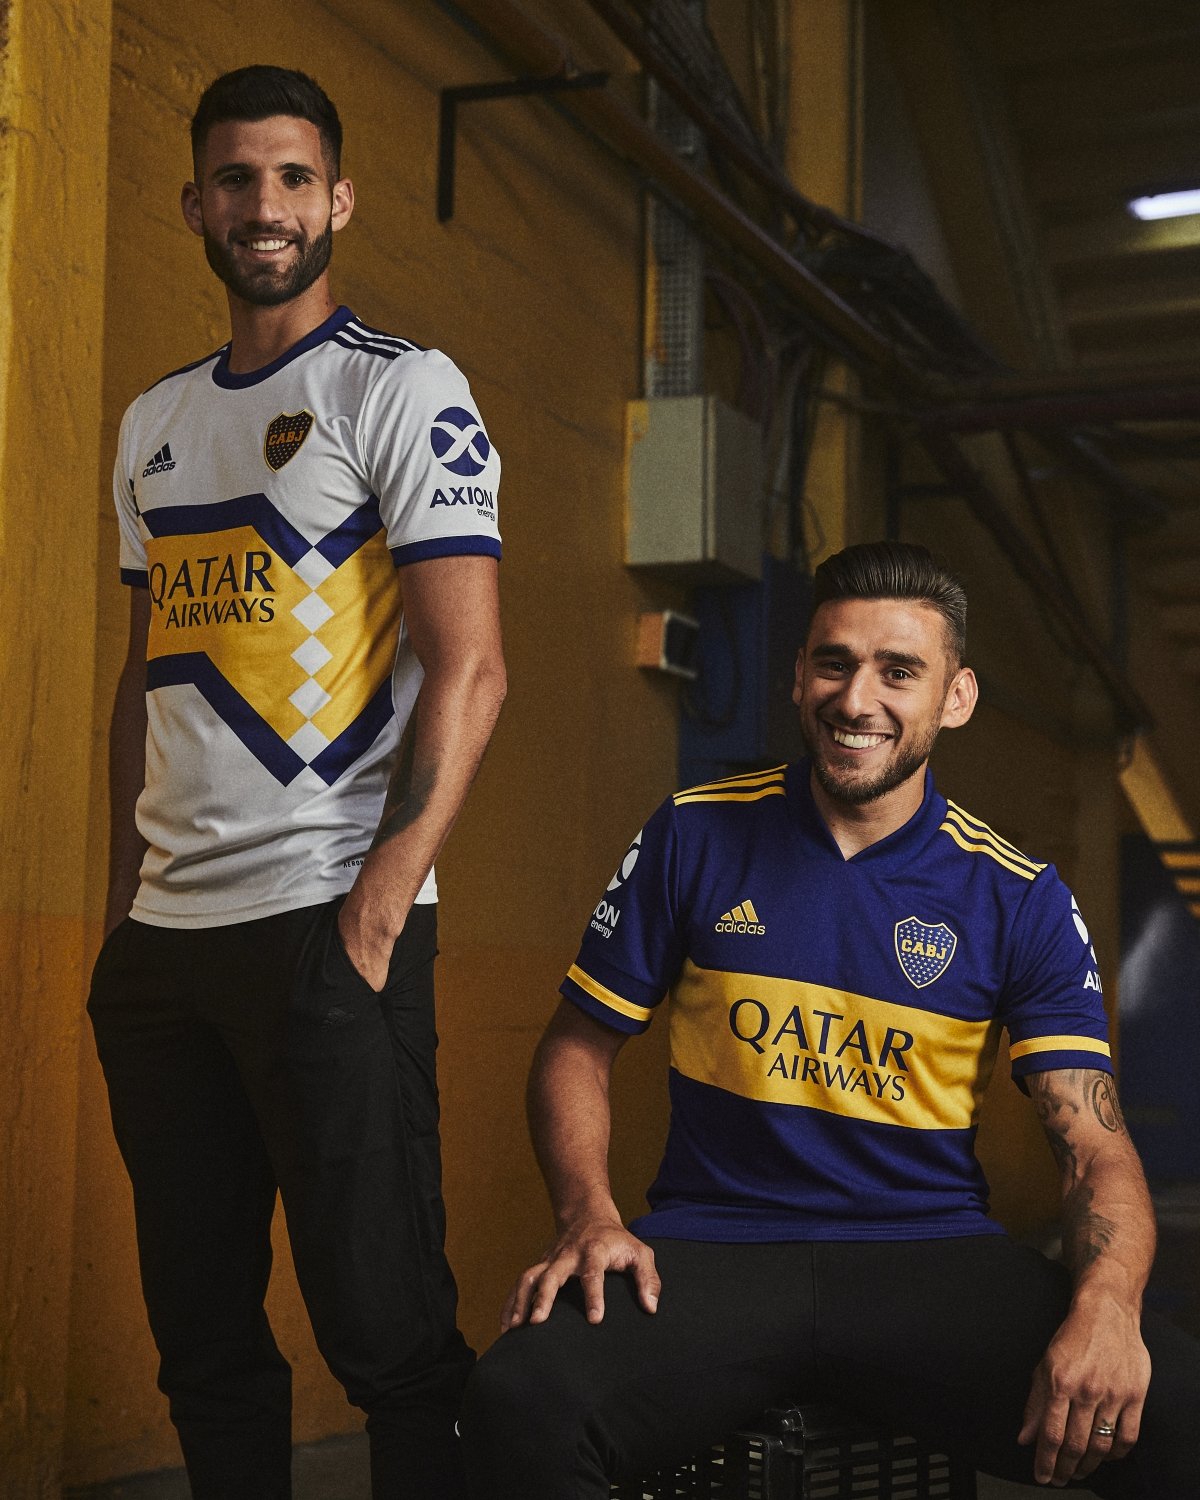 As novas camisas do Boca Juniors com a Adidas